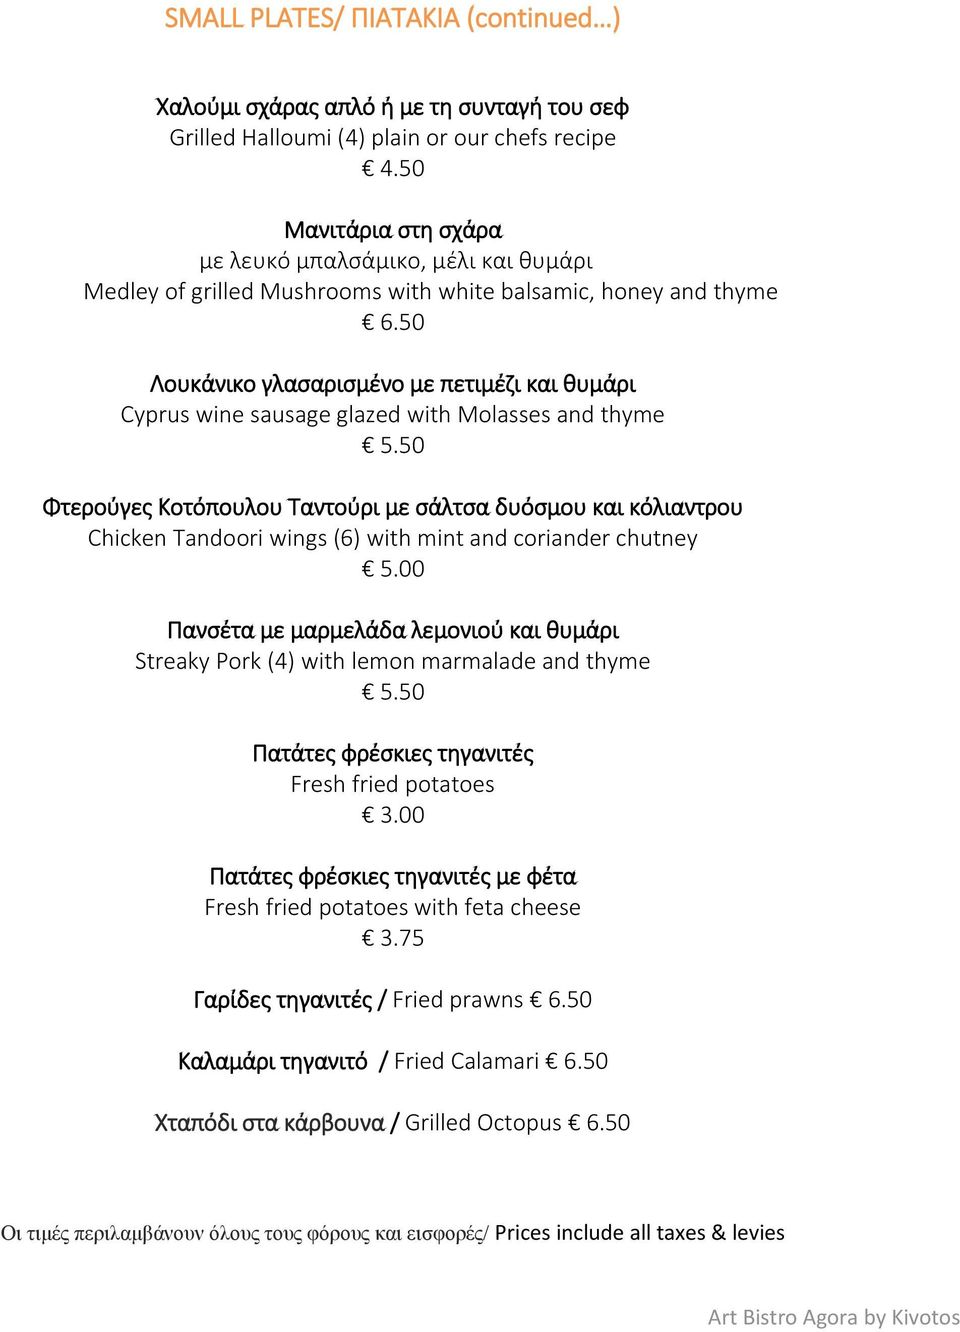 50 Λουκάνικο γλασαρισμένο με πετιμέζι και θυμάρι Cyprus wine sausage glazed with Molasses and thyme 5.